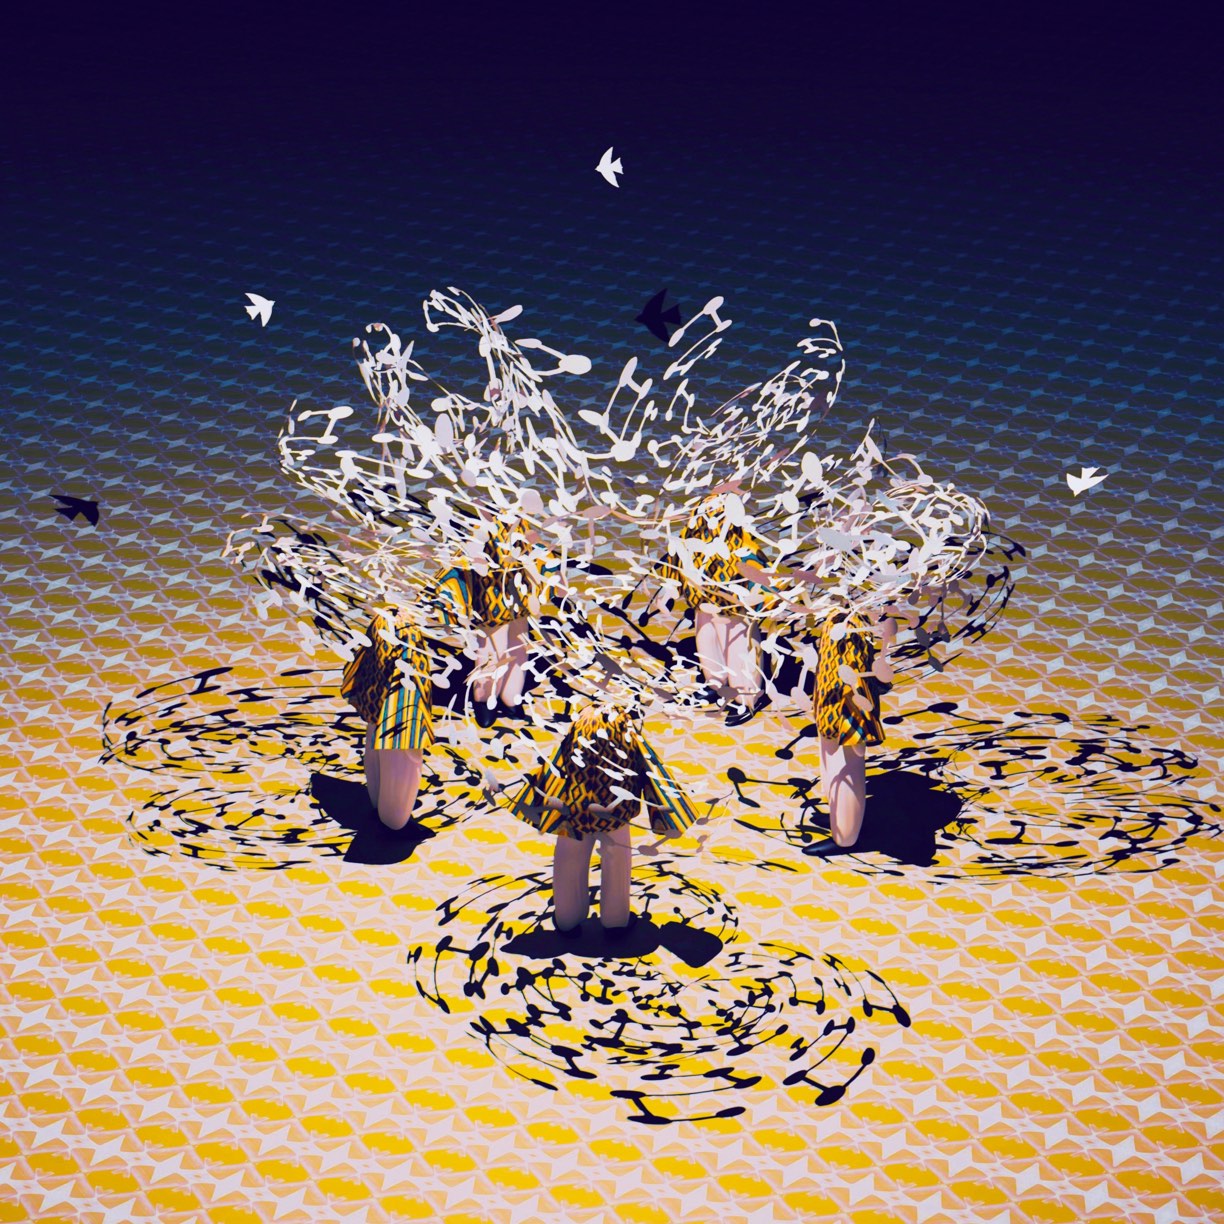 Atsushigraphのデジタルアート作品「Brain Nest」の画像です。